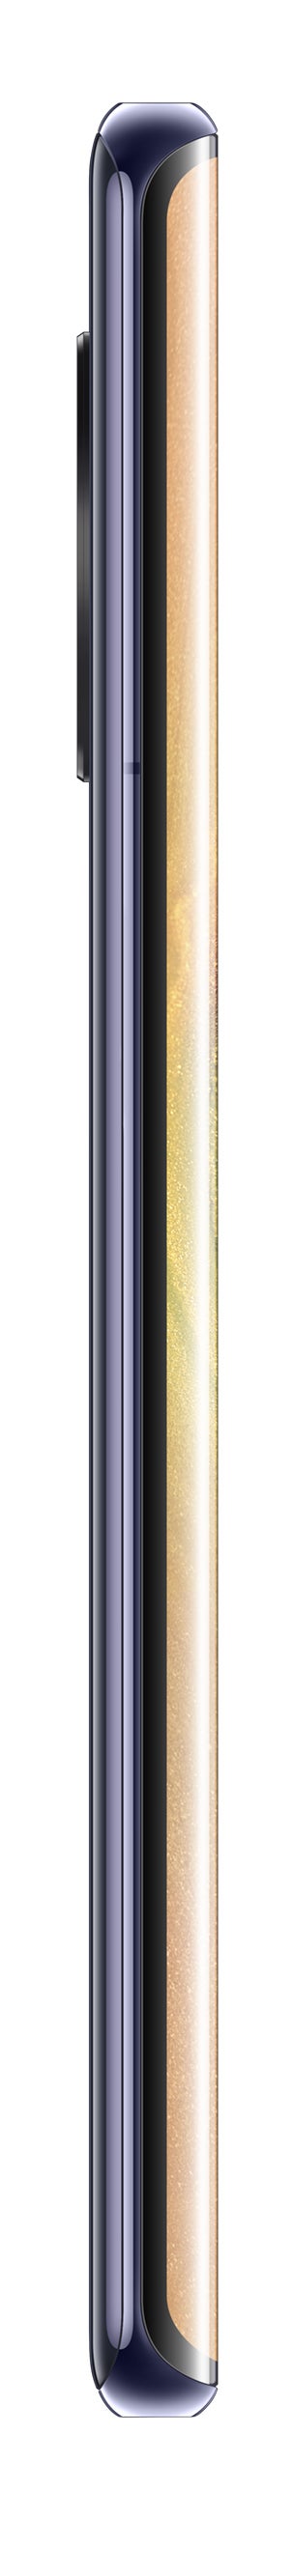 Huawei Mate 30 Pro Silber. (Bild: Huawei)